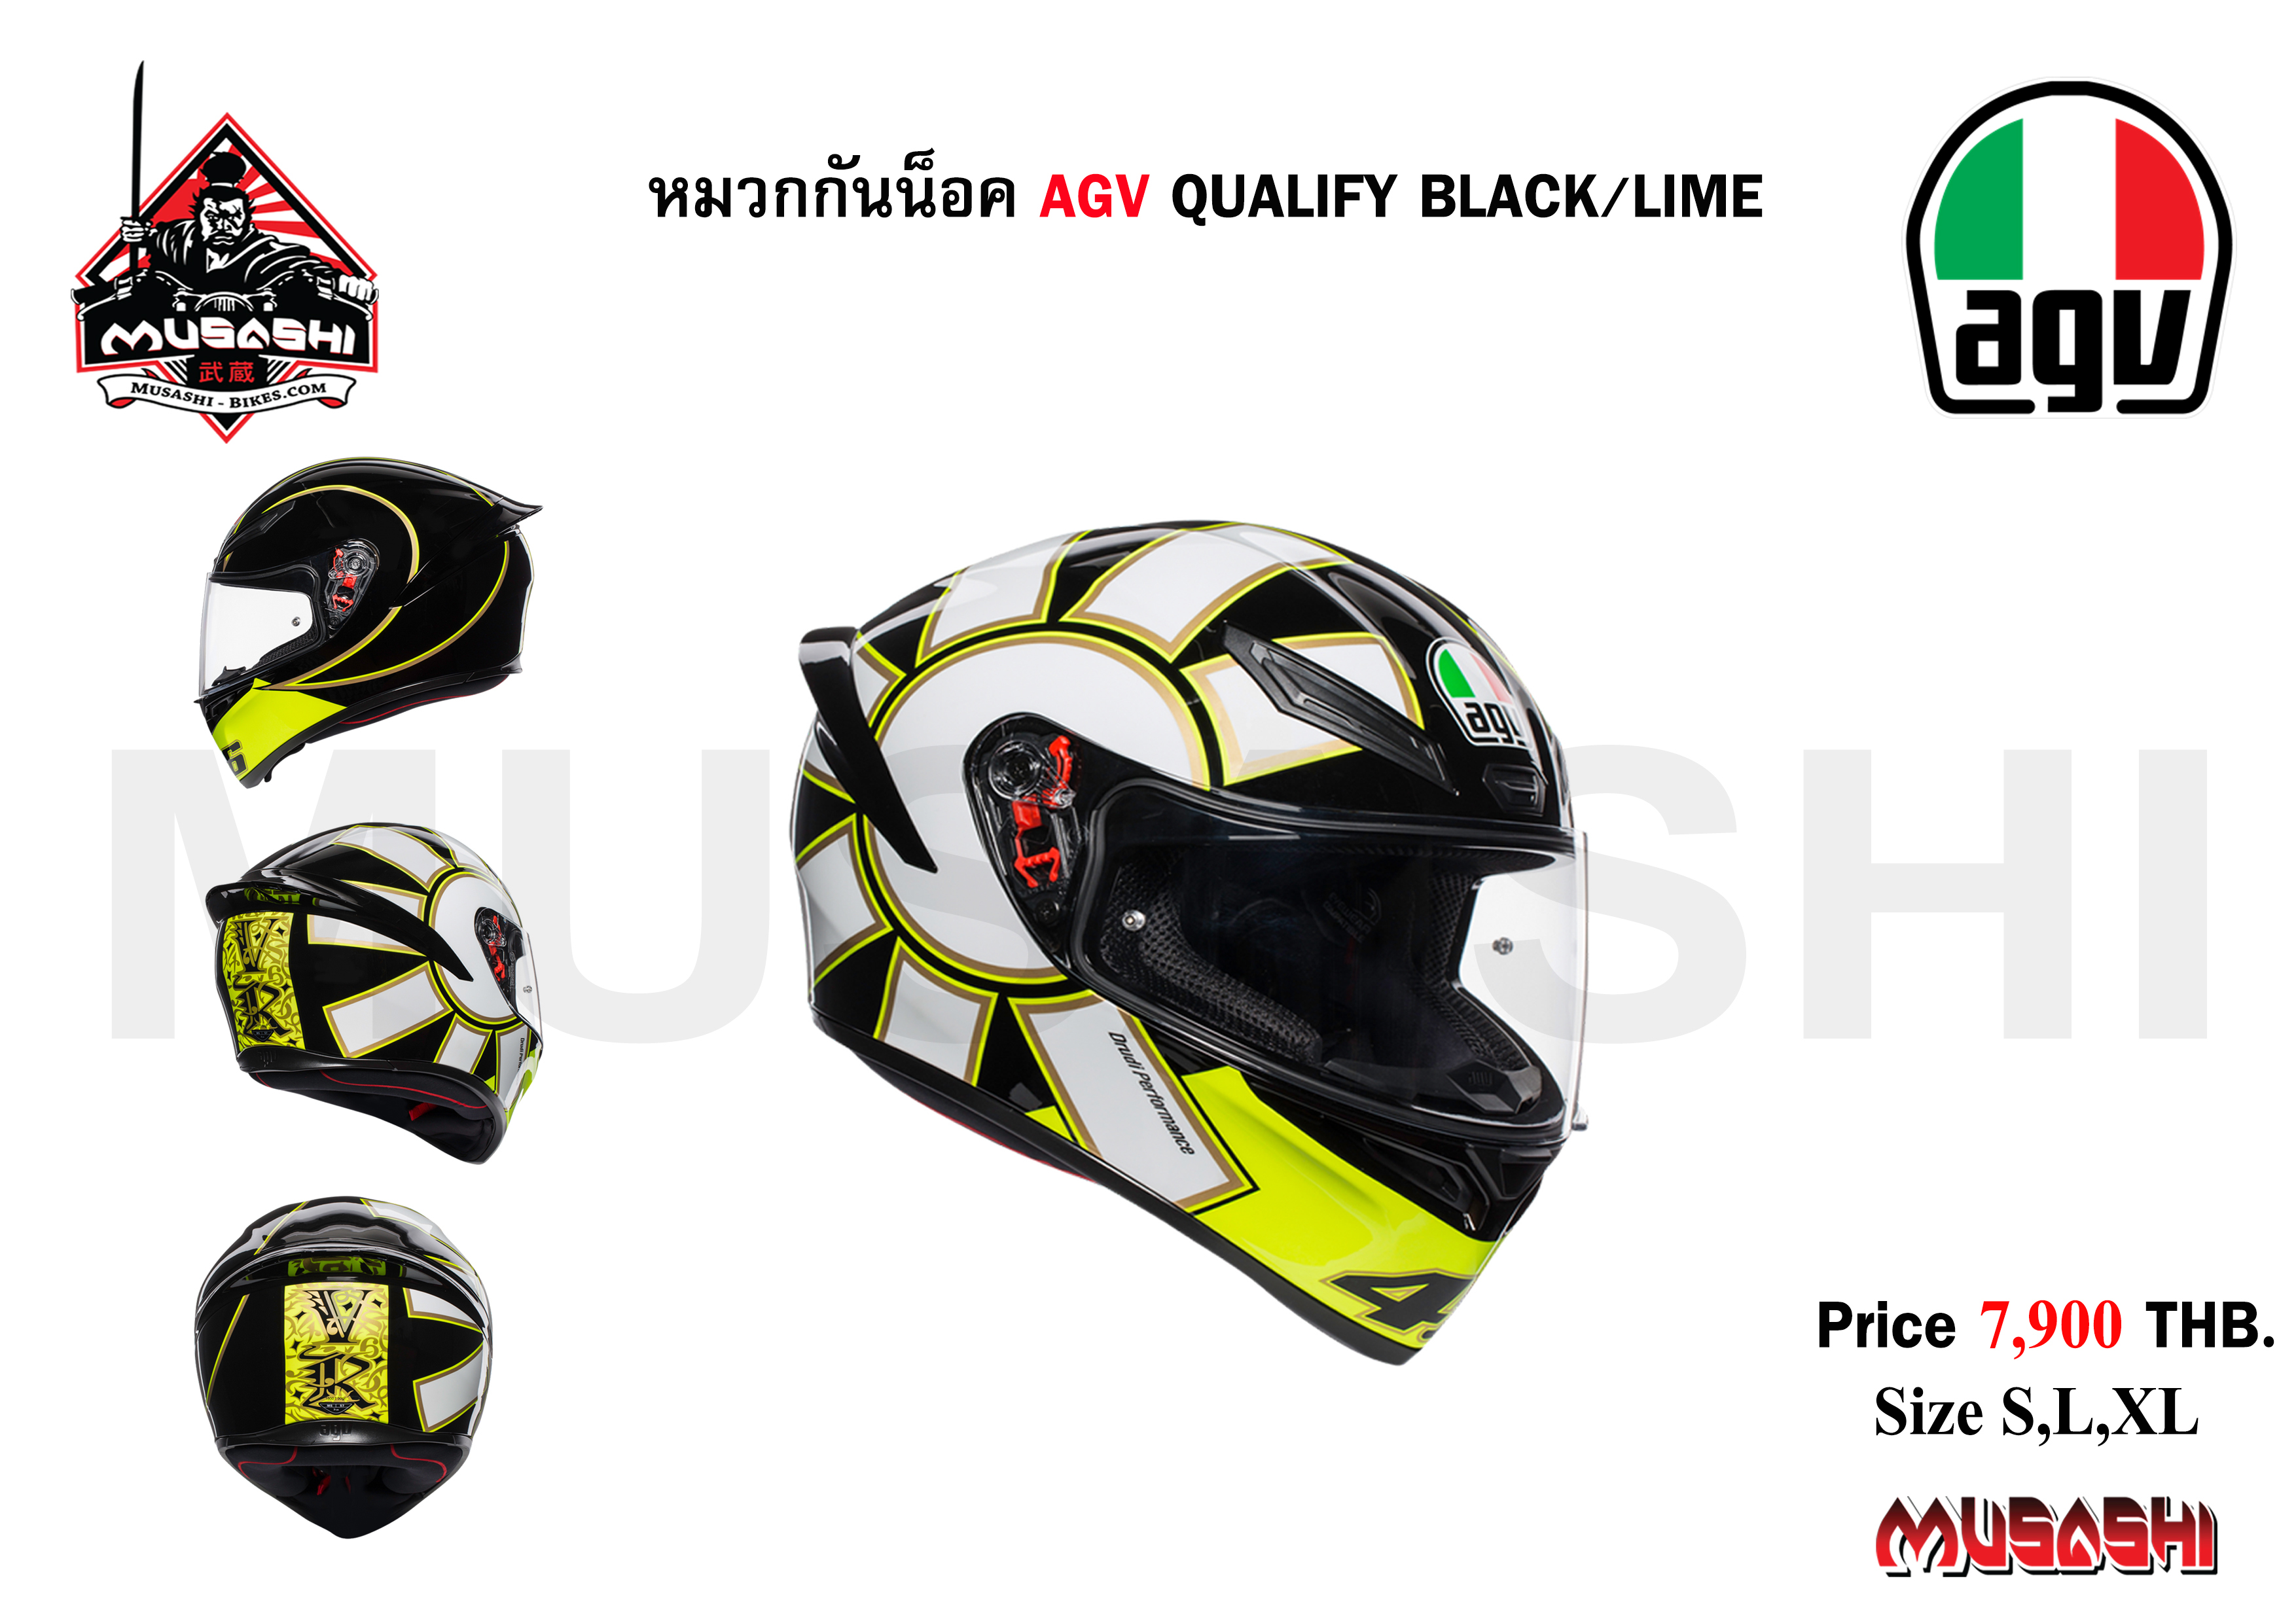 AGV Qualify Black / Lime